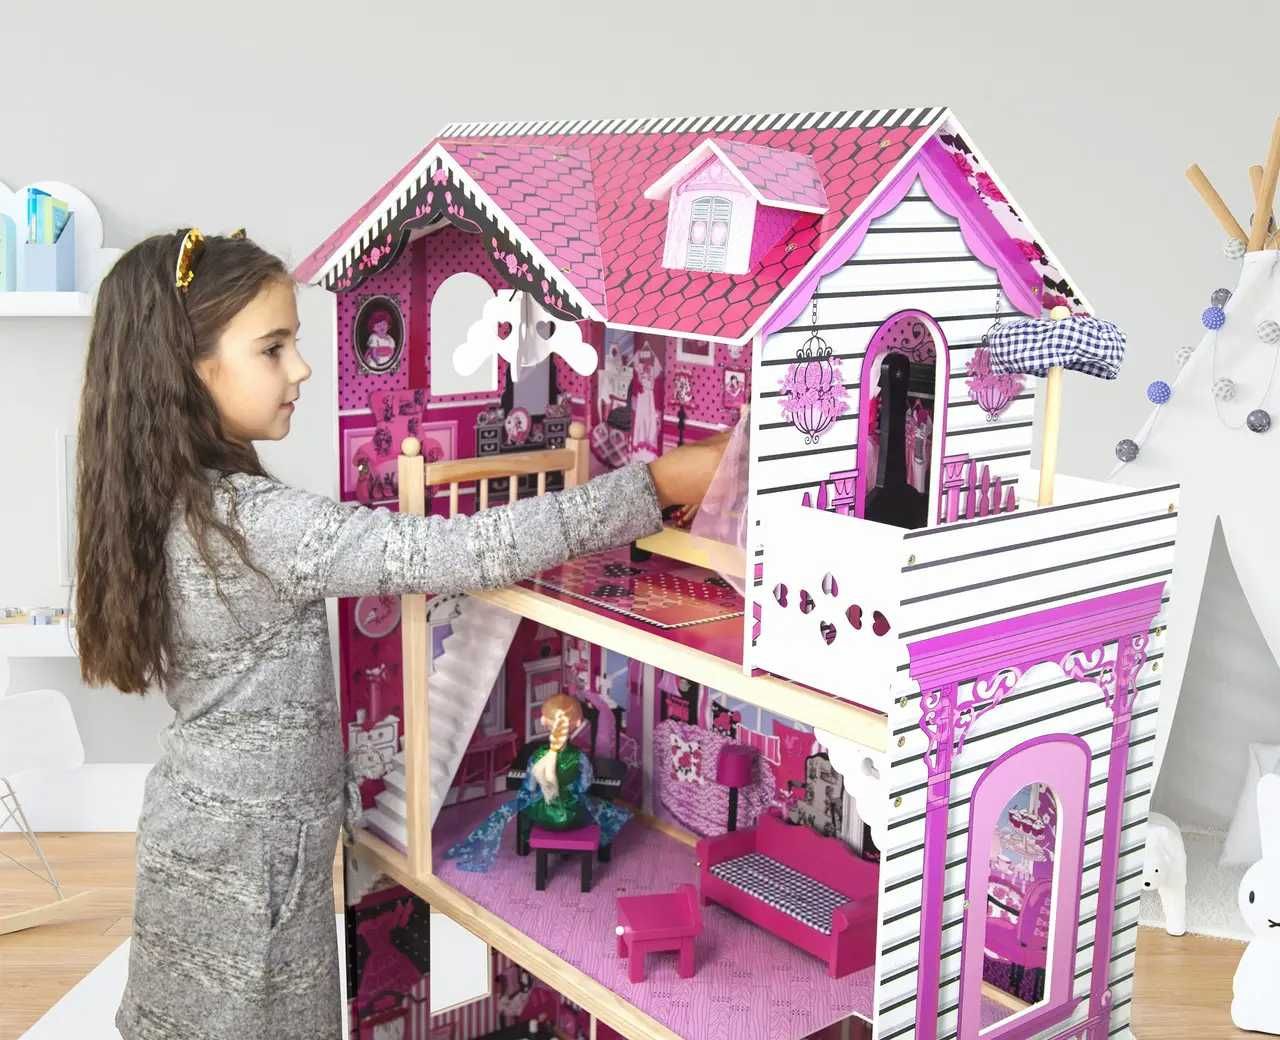 Ляльковий будиночок ігровий для Барбі AVKO Вілла Барселона